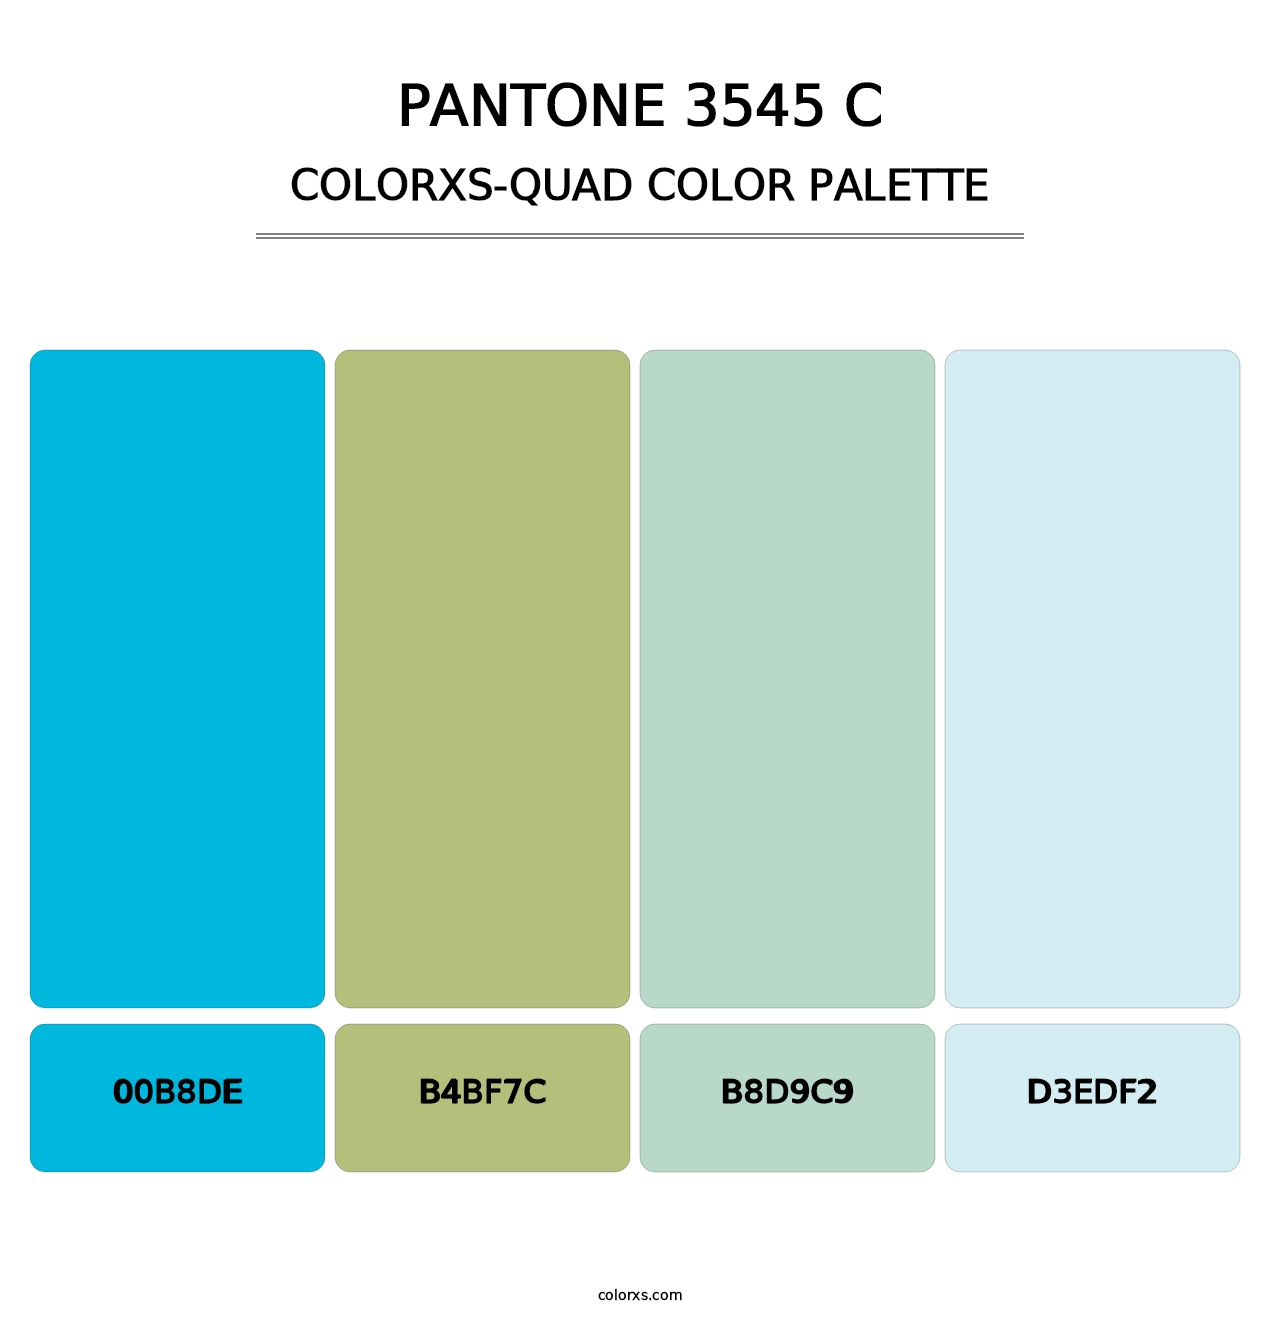 PANTONE 3545 C - Colorxs Quad Palette